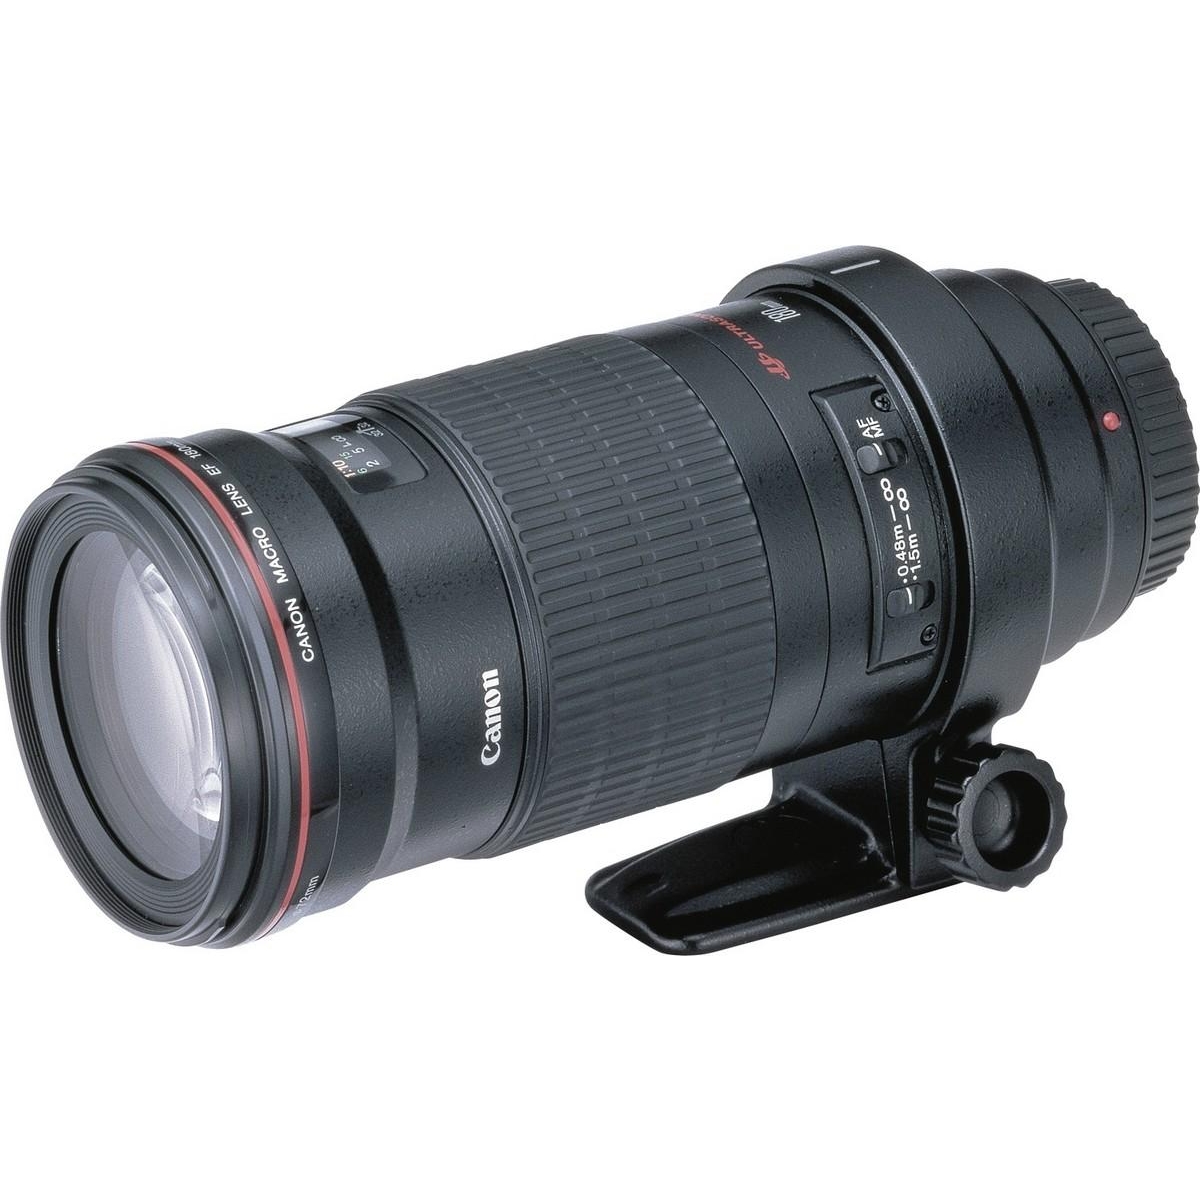 Canon EF 180mm f/3,5L Macro USM - зображення 1